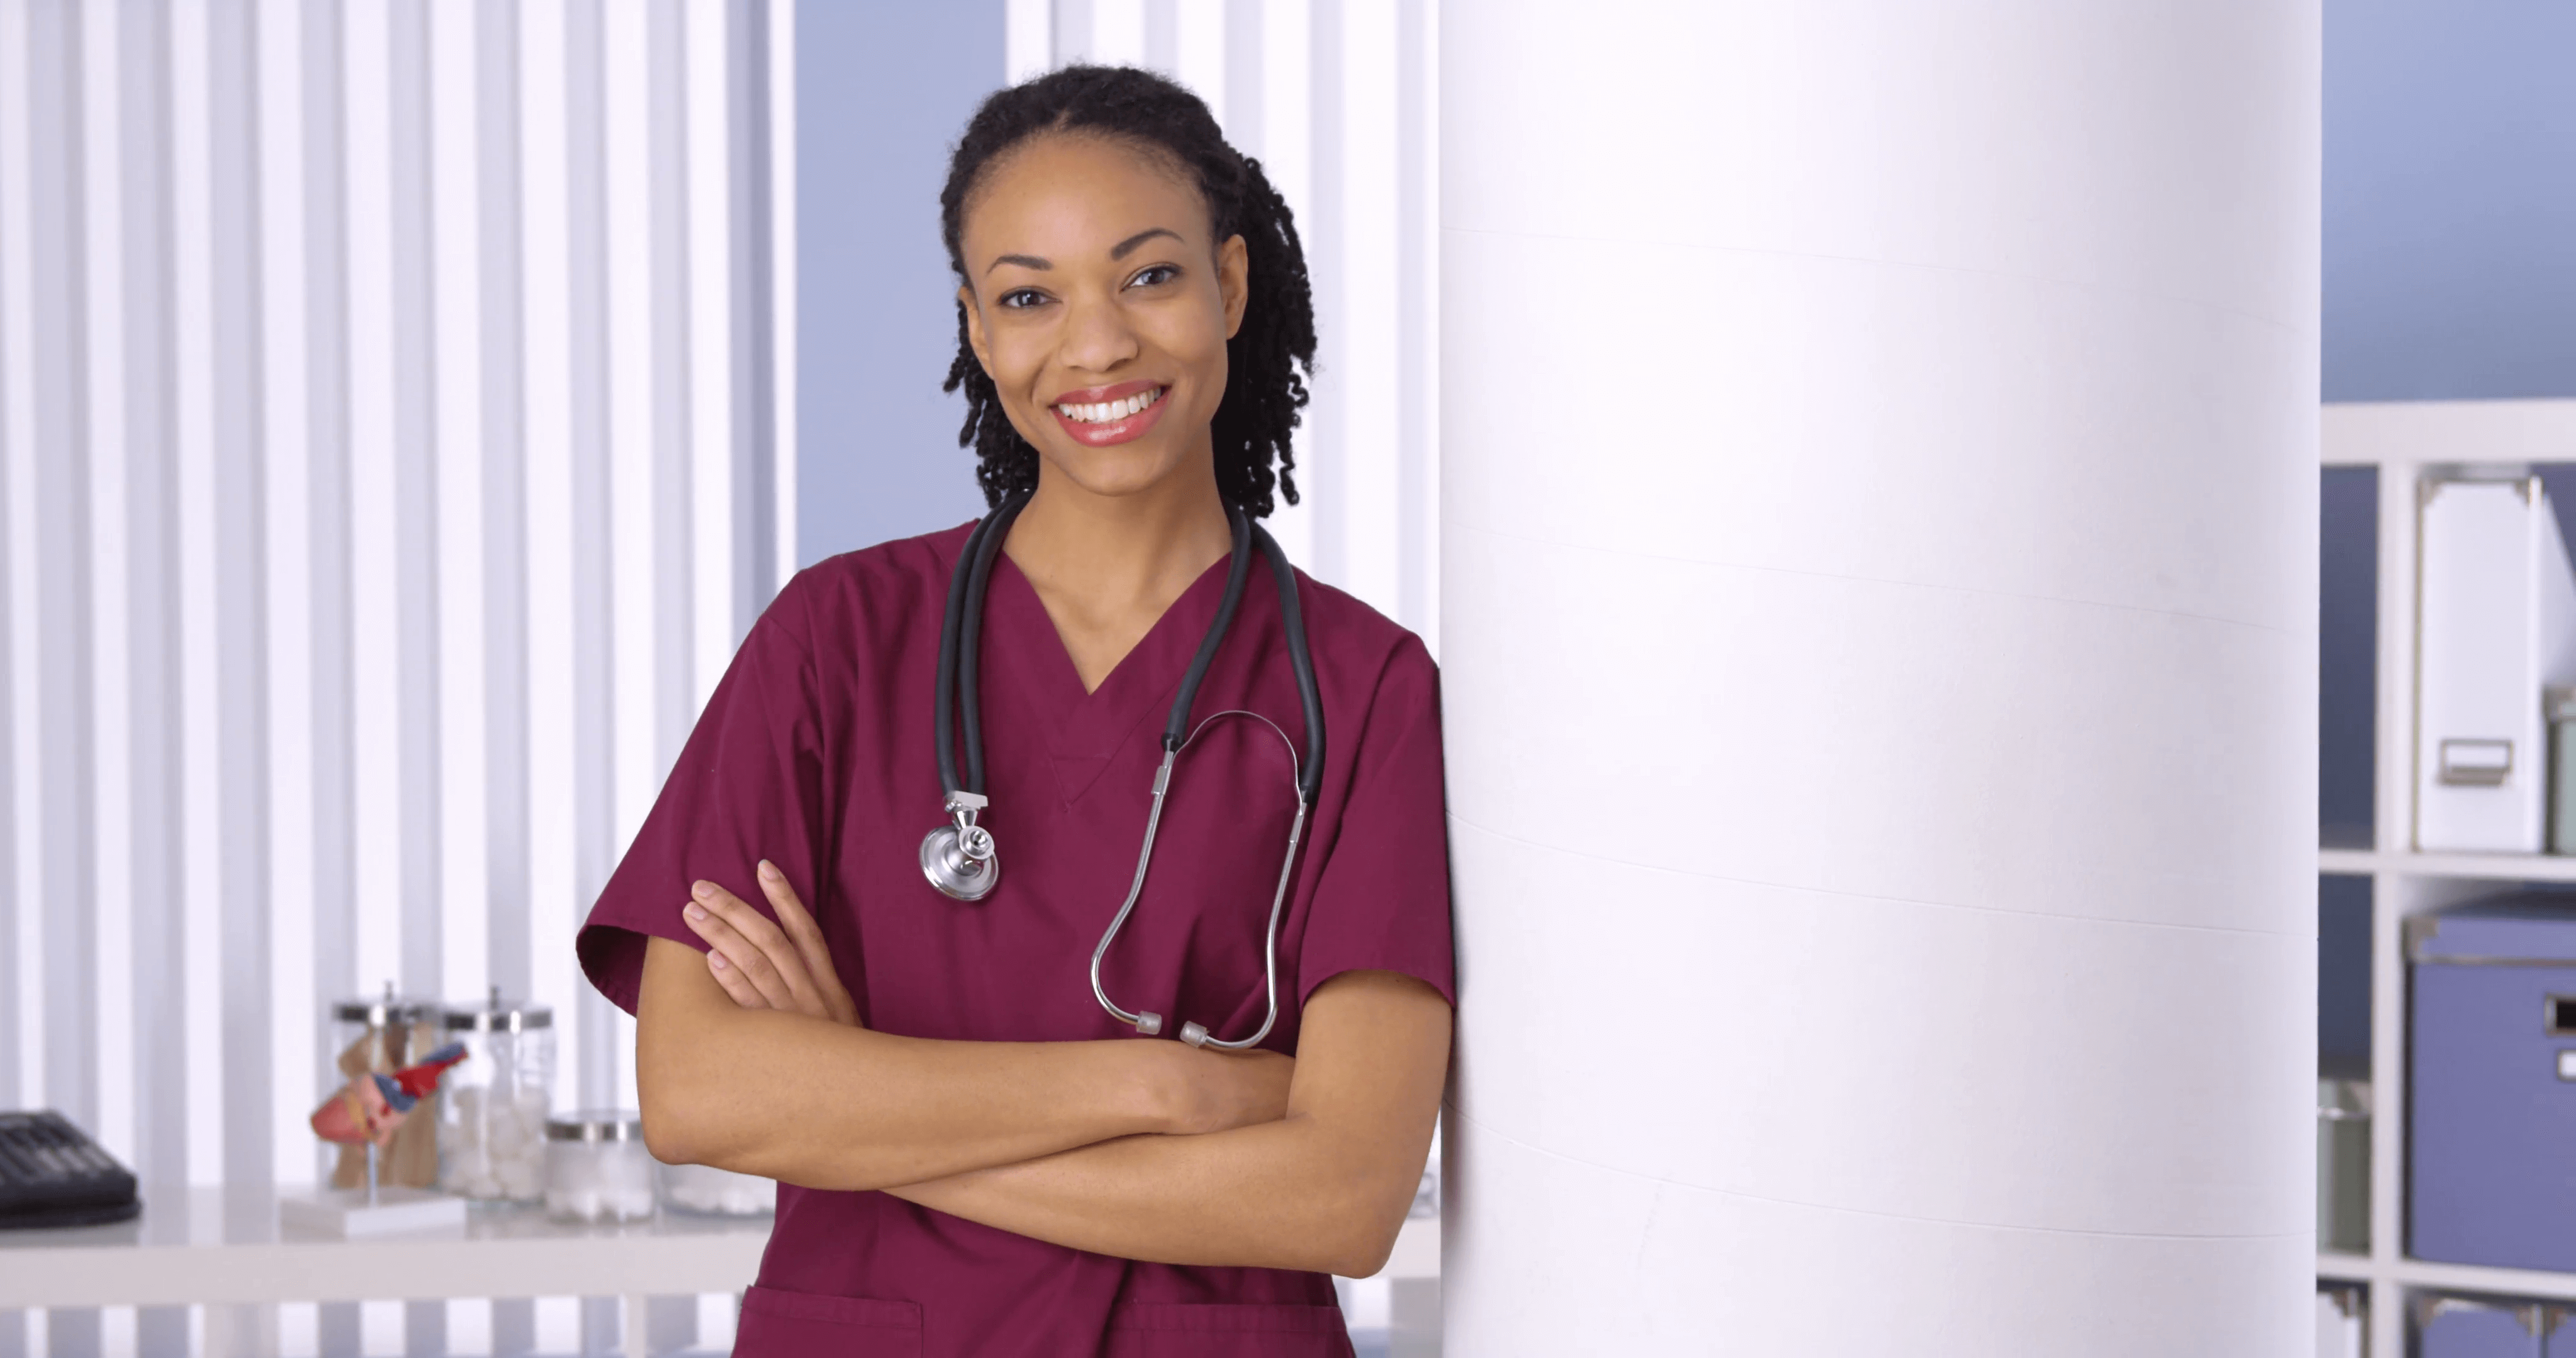 Темнокожая доктор. Чернокожая врач женщина. Фото африканской женщины в офисе. Доктор Блэк. Как выглядят врачи женщины темнокожие.